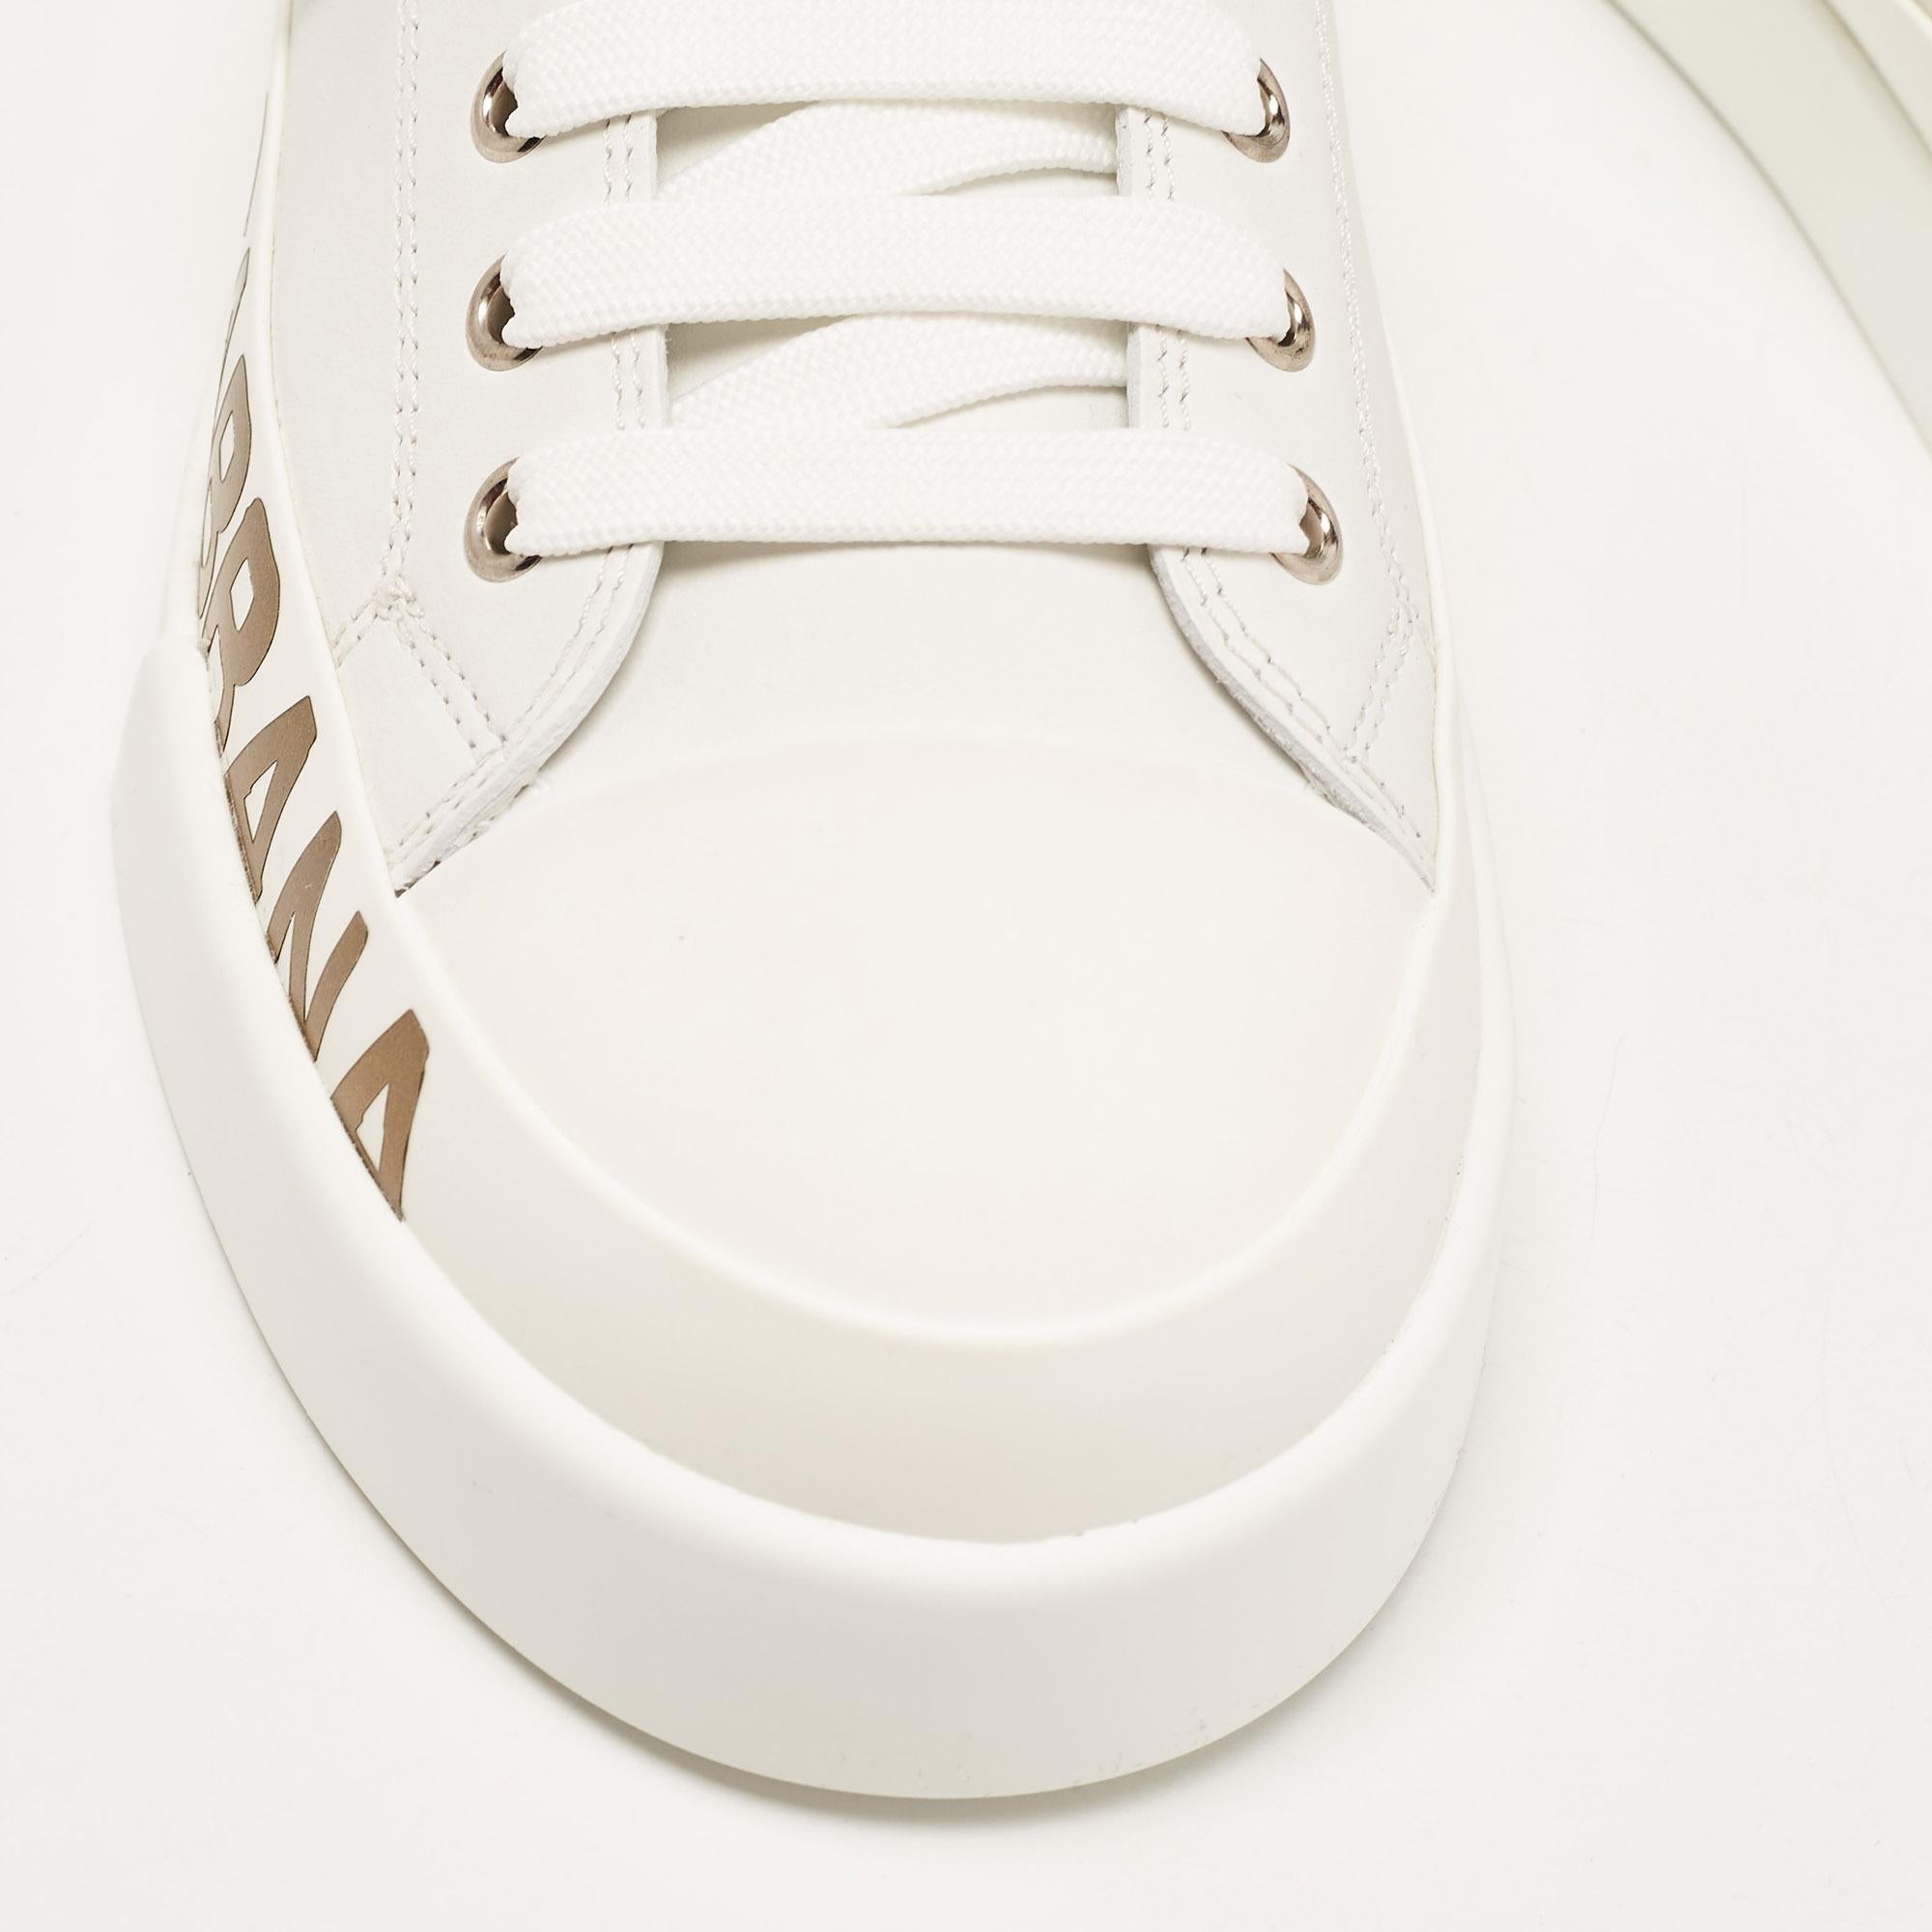 Women's Dolce & Gabbana White/Gold Leather Portofino Sneakers Size 41